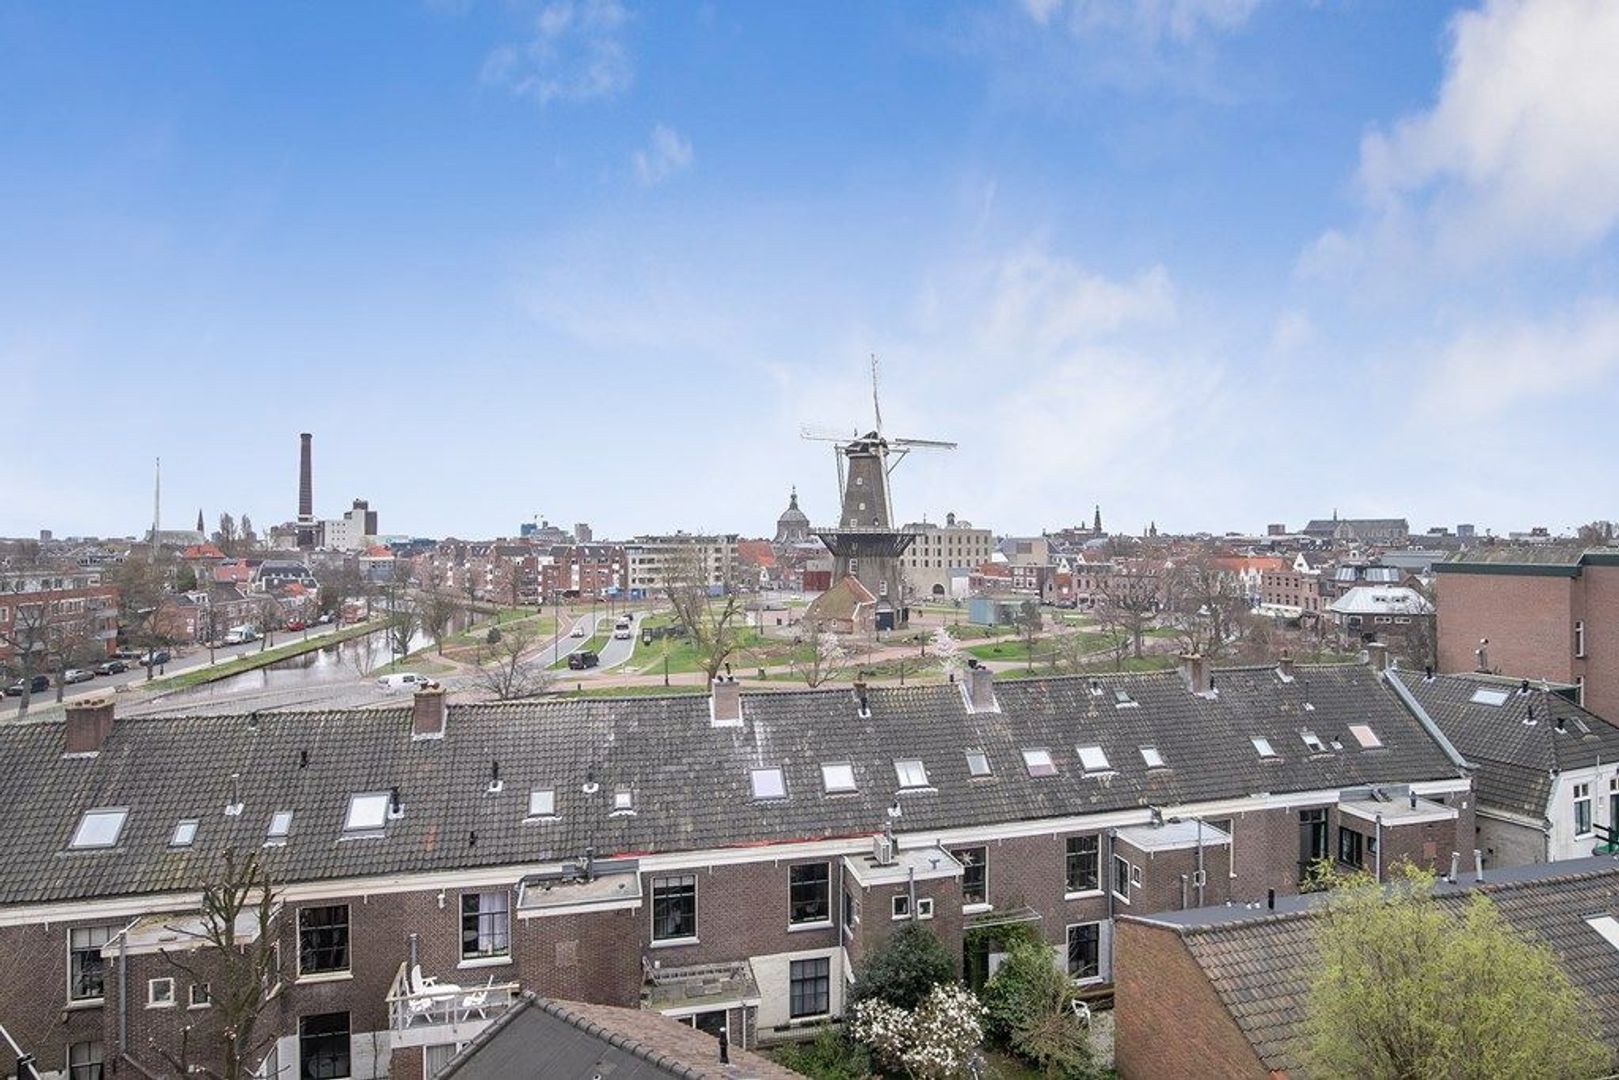 Bekijk foto 1/40 van apartment in Leiden